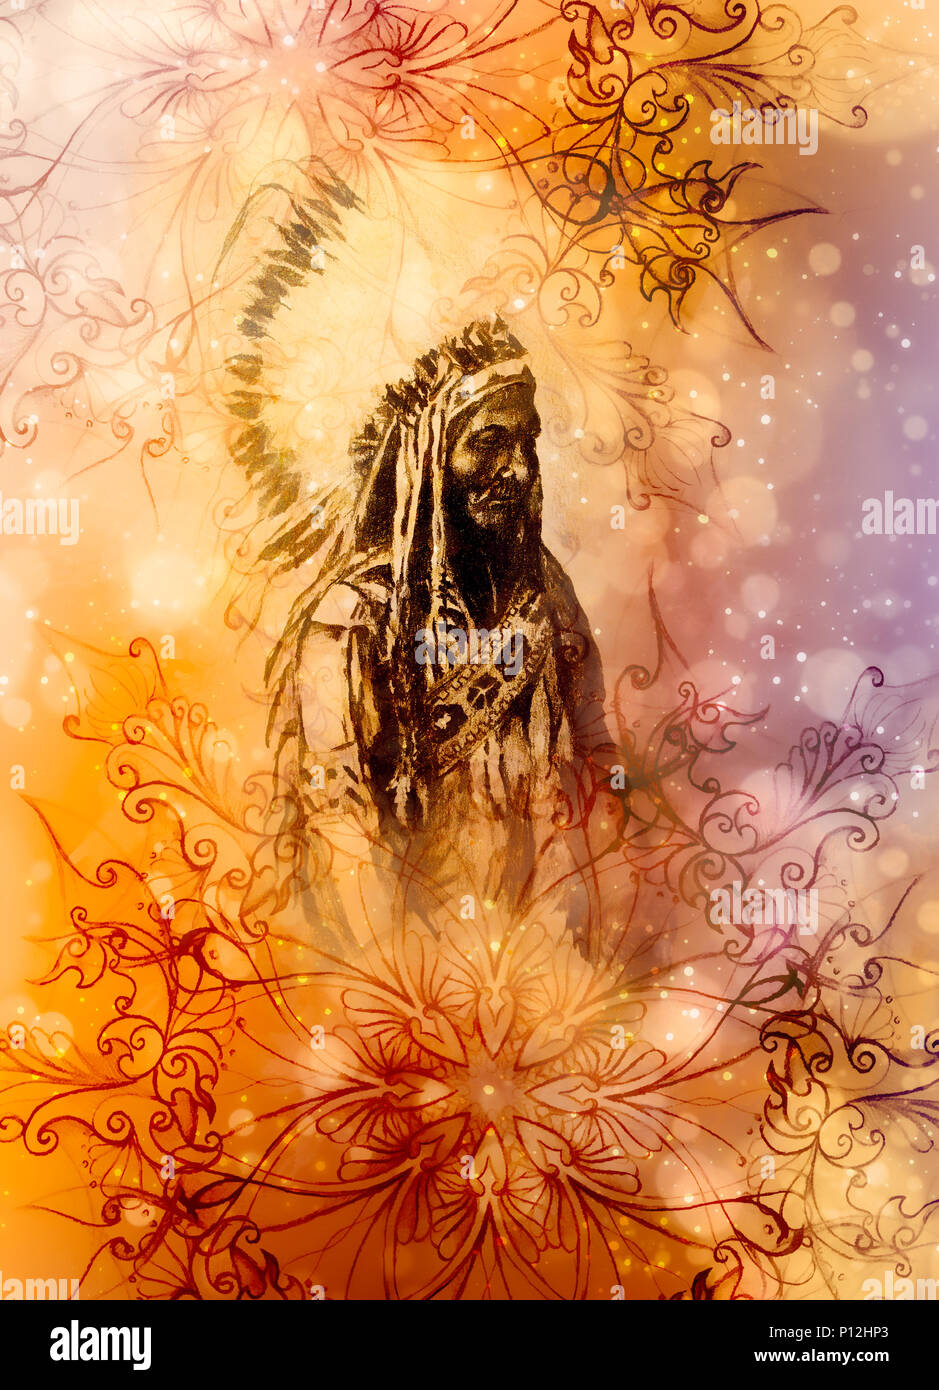 Dessin de Native American Indian foreman Sitting Bull - Totanka Yotanka historique d'après la photographie, collage graphique Banque D'Images